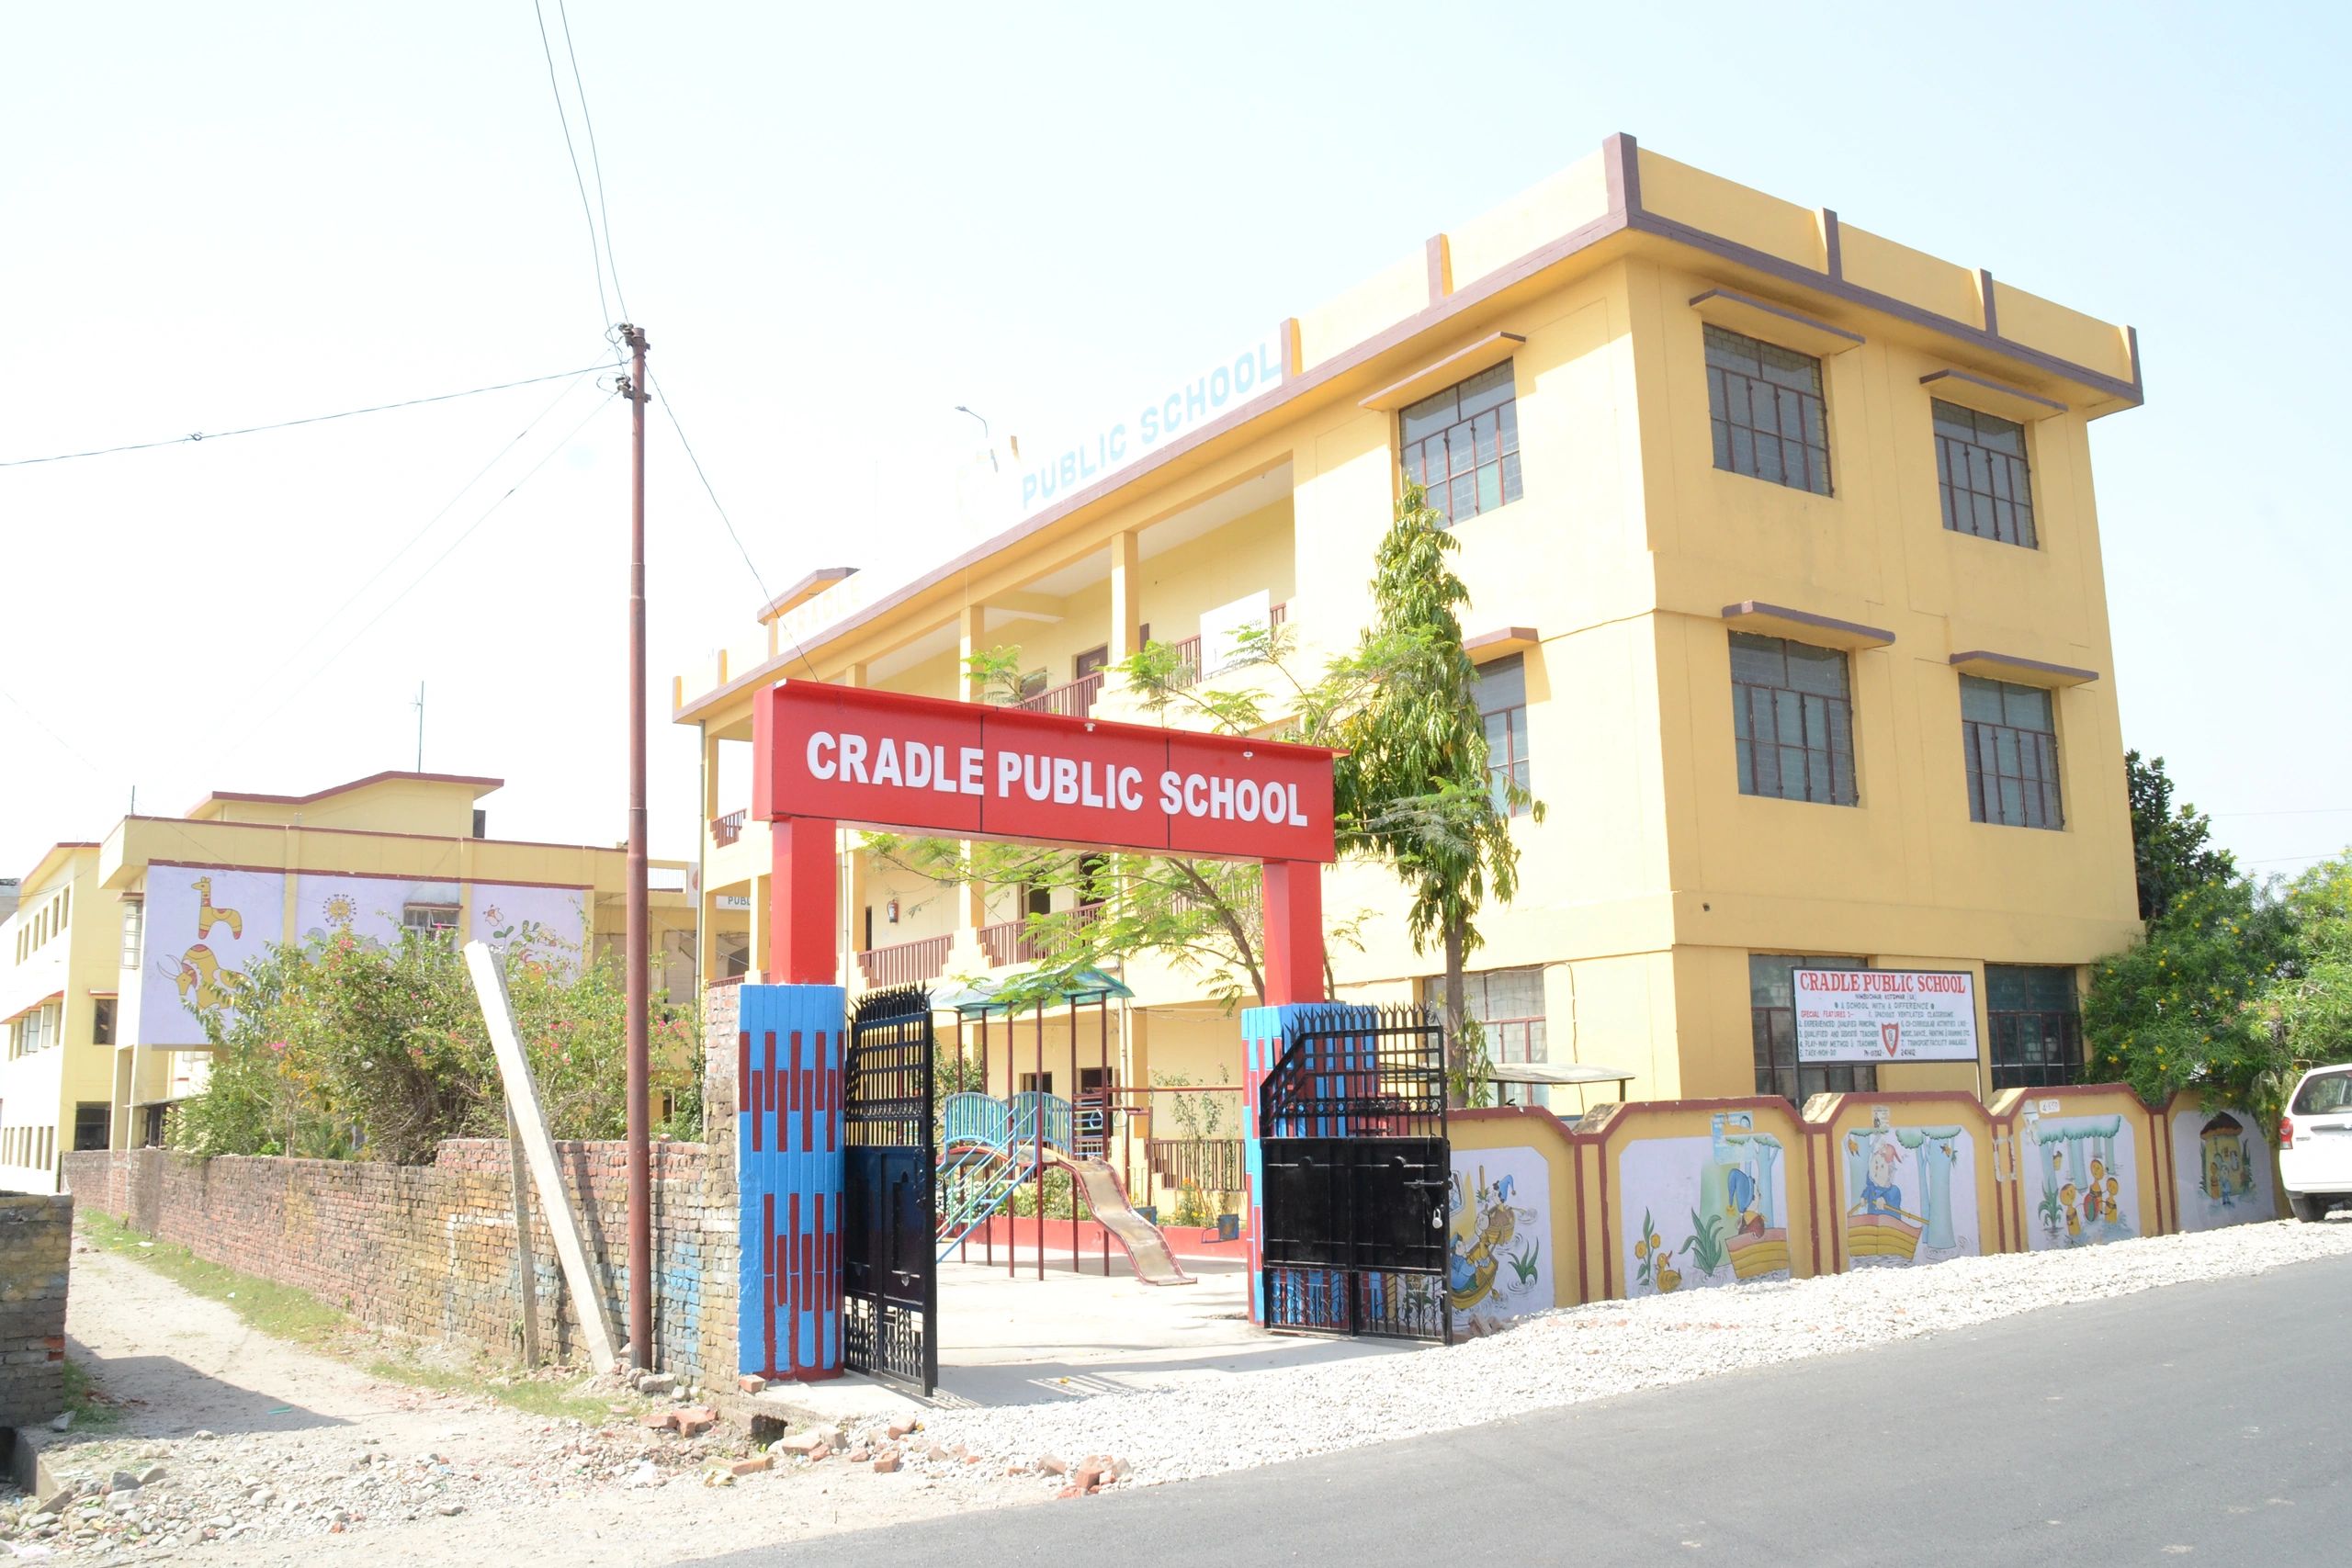 Cradle Public School